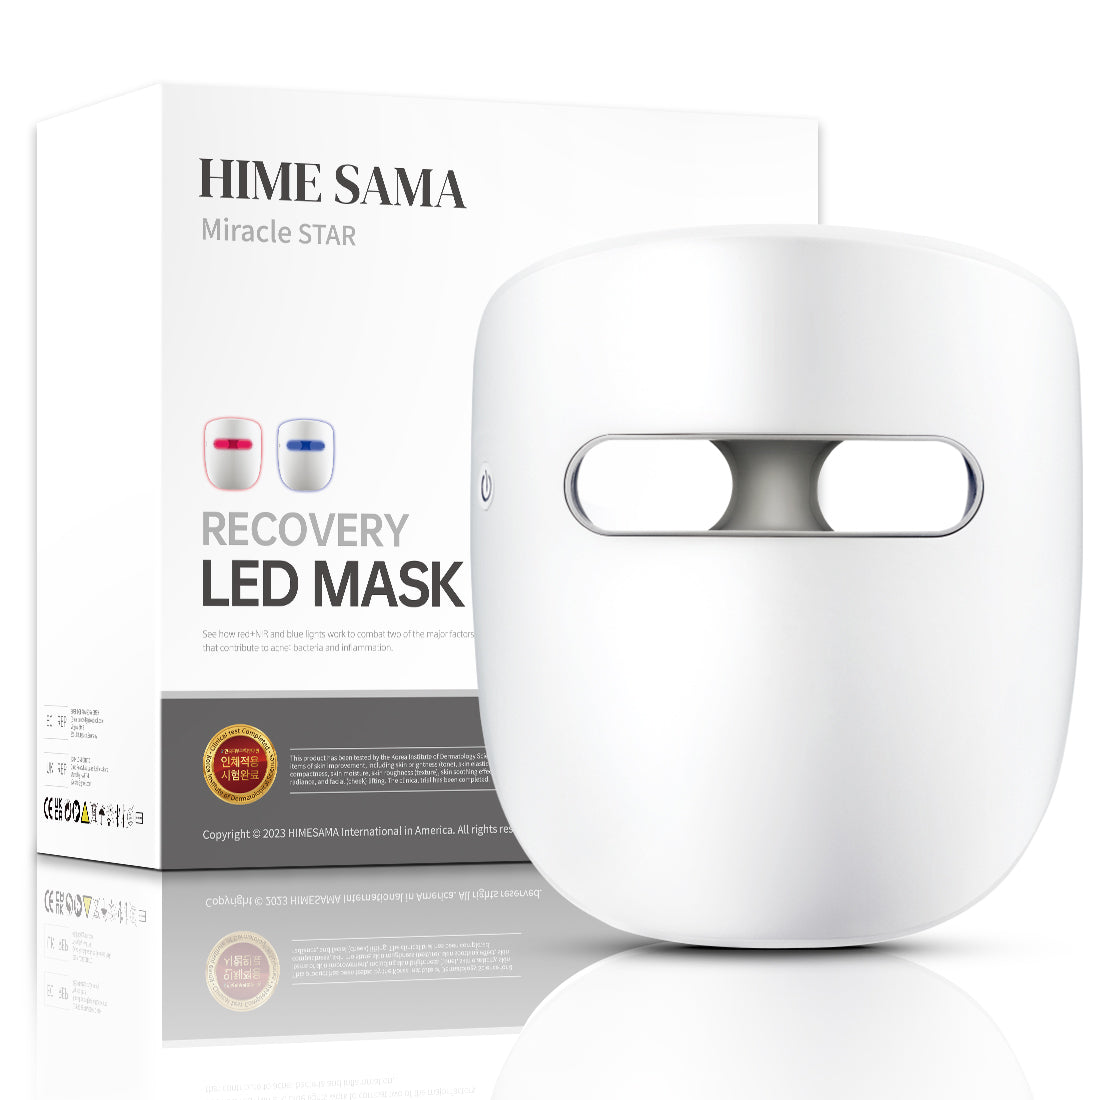 HIME SAMA - Terapia de luz con mascarilla facial LED, luz infrarroja/azul roja para el rejuvenecimiento de la piel del rostro.(Miracle STAR)